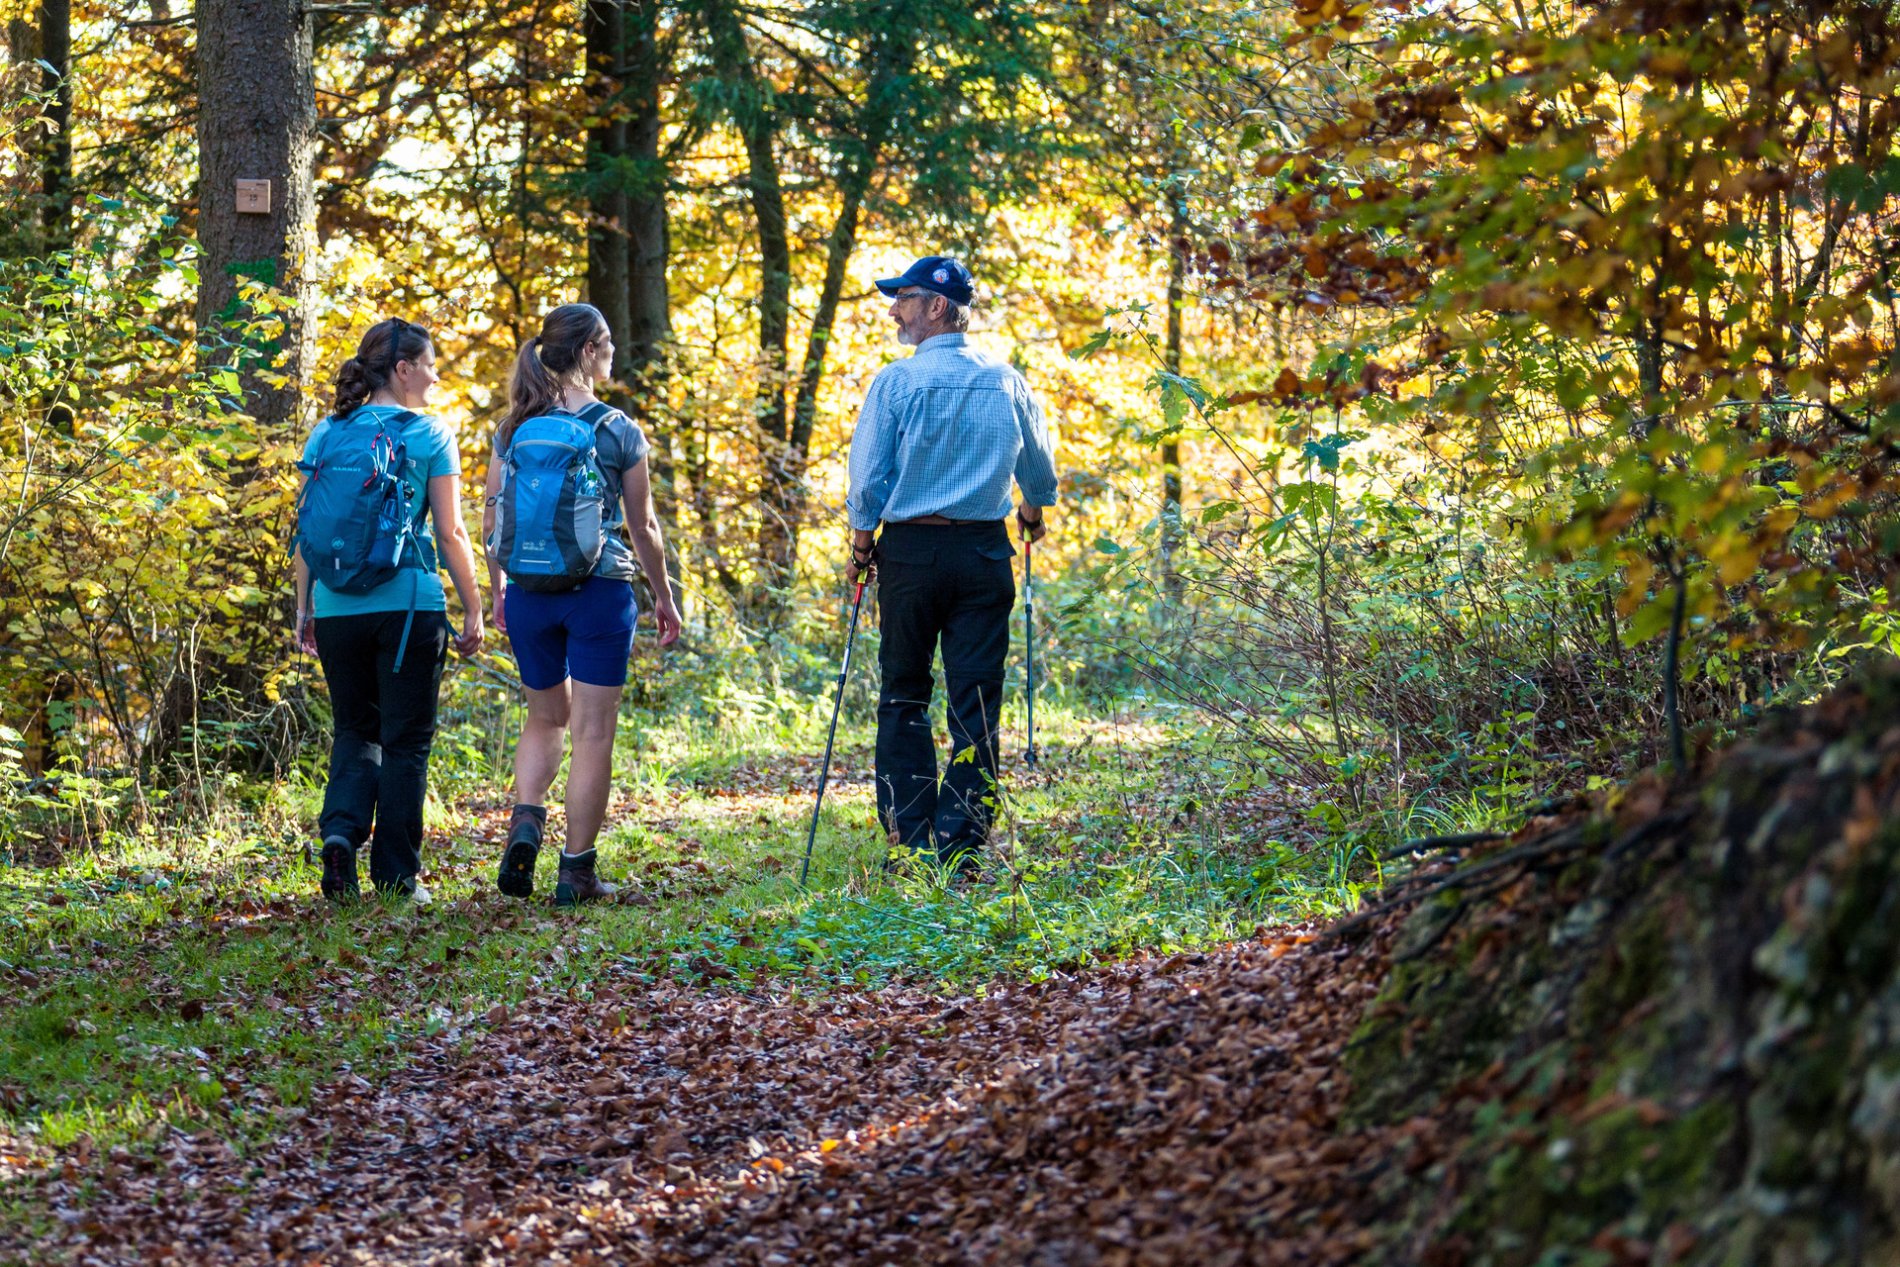 Wandertour Galgenberg Runde in Münsingen im Biosphärengebiet Schwäbische Alb. Drei Wanderer*innen laufen auf einem unbefestigten Weg durch den Herbstwald und unterhalten sich. Eine*r hat Stöcke dabei und trägt eine Mütze.